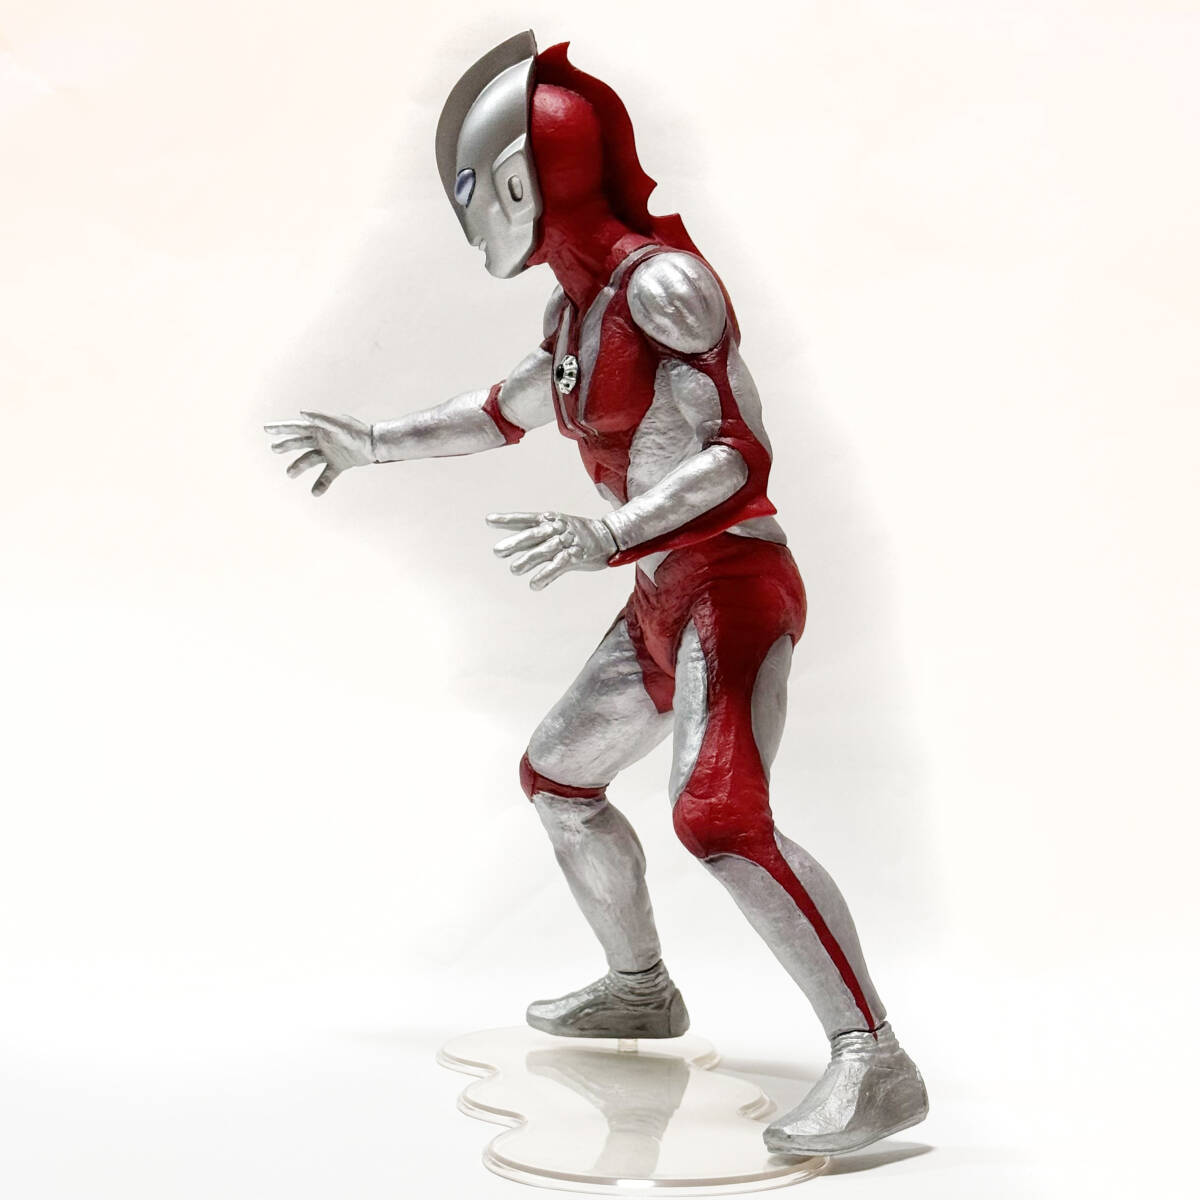  большой монстр серии [ Ultraman Powered ] обычная версия eks плюс |X-PLUS| sofvi фигурка 